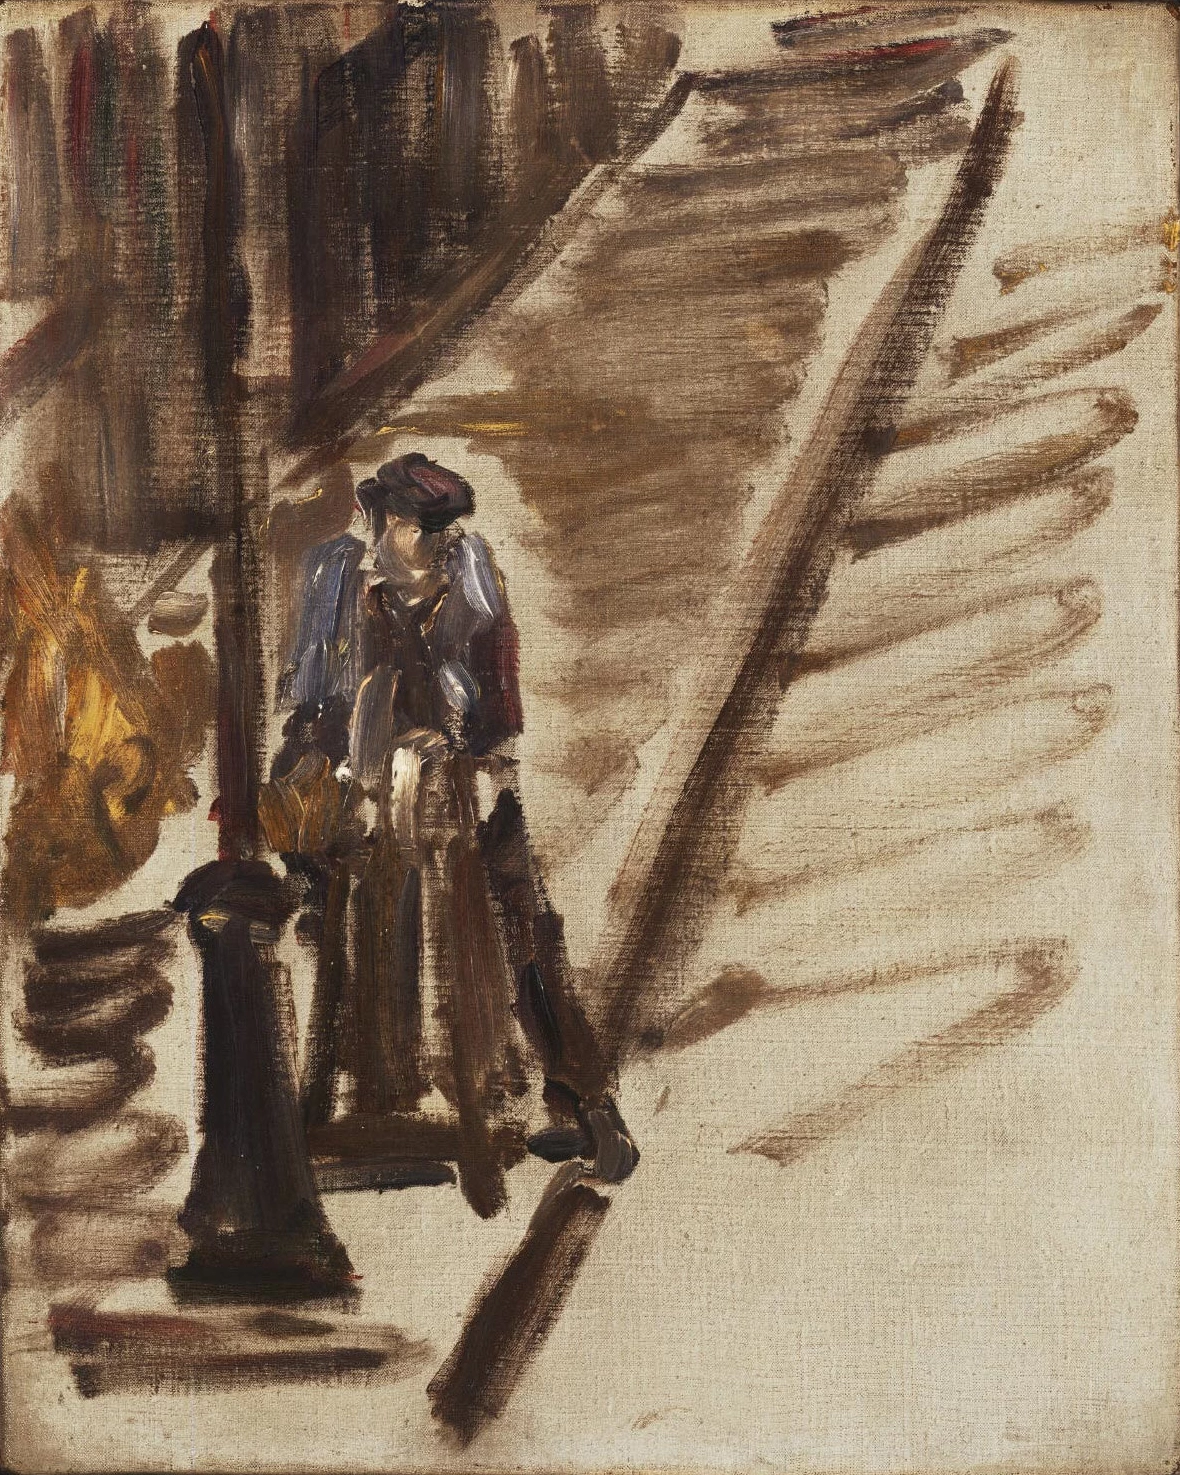  21-Édouard Manet, Arrotino, rue Mosnier, 1878-Philadelphia Museum of Art 